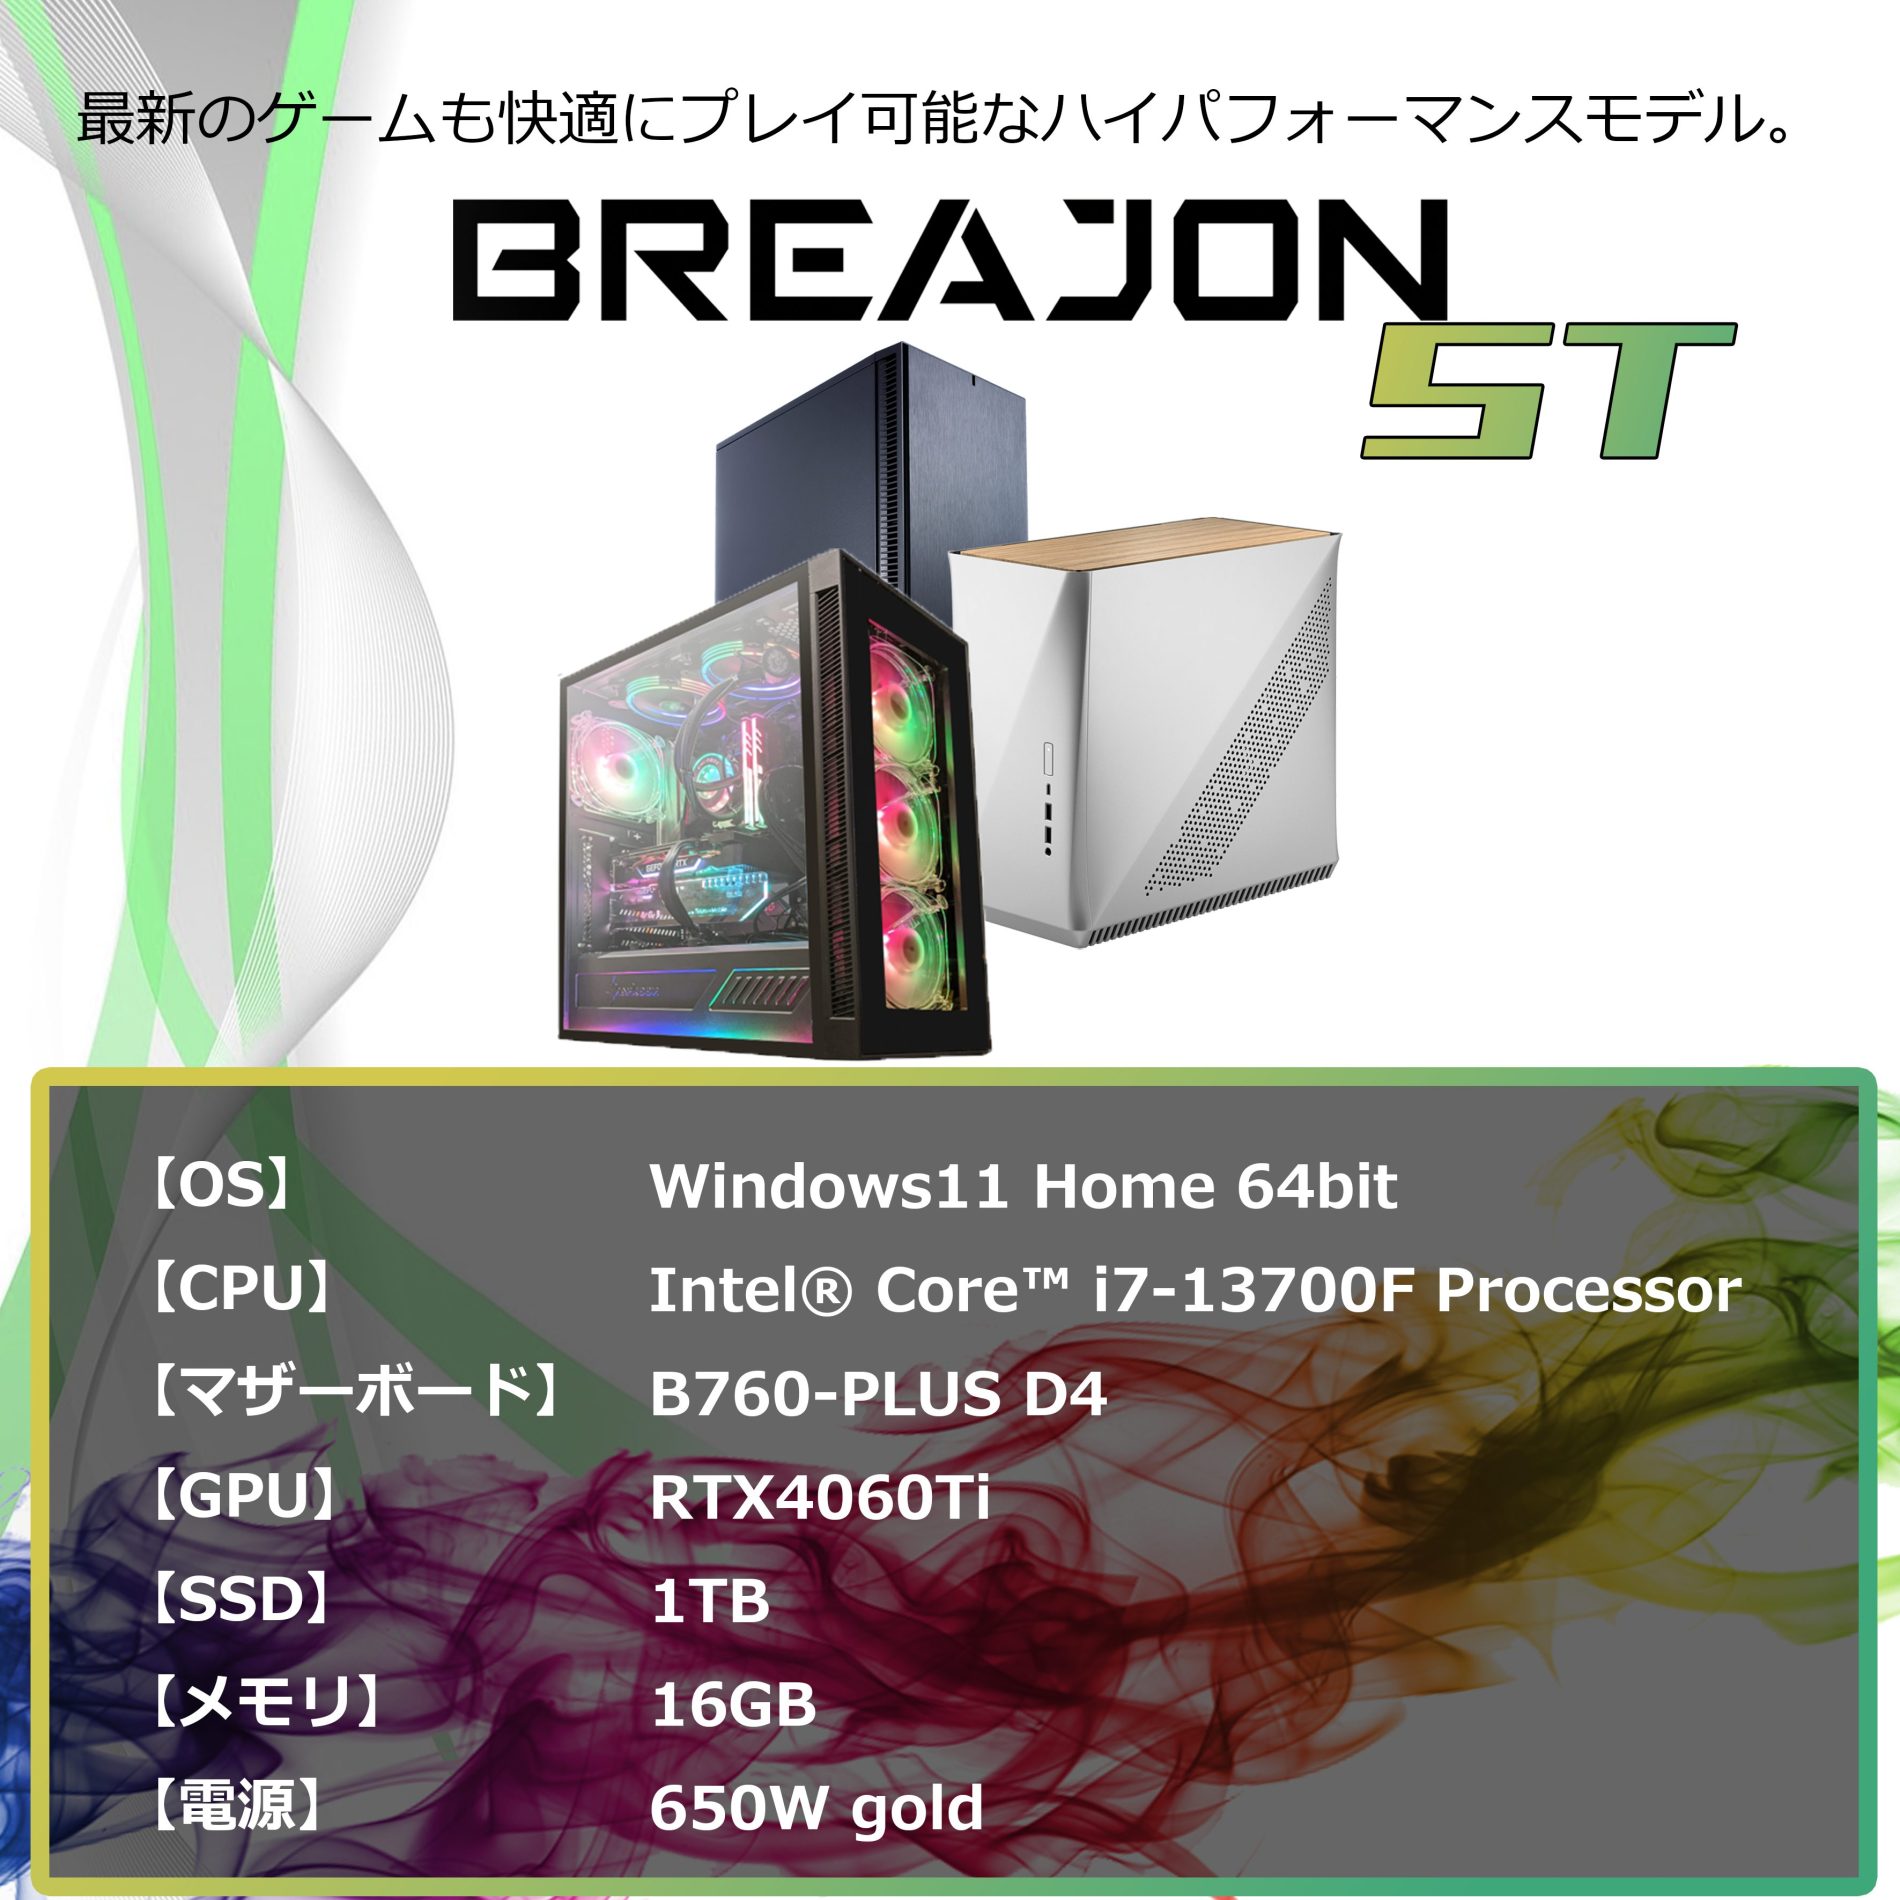 BREAJON ST｜最新ゲームも快適にプレイできる、最も人気の価格帯モデル。<br>性能と価格が高いレベルでまとまった、コストパフォーマンスにすぐれたモデルです。